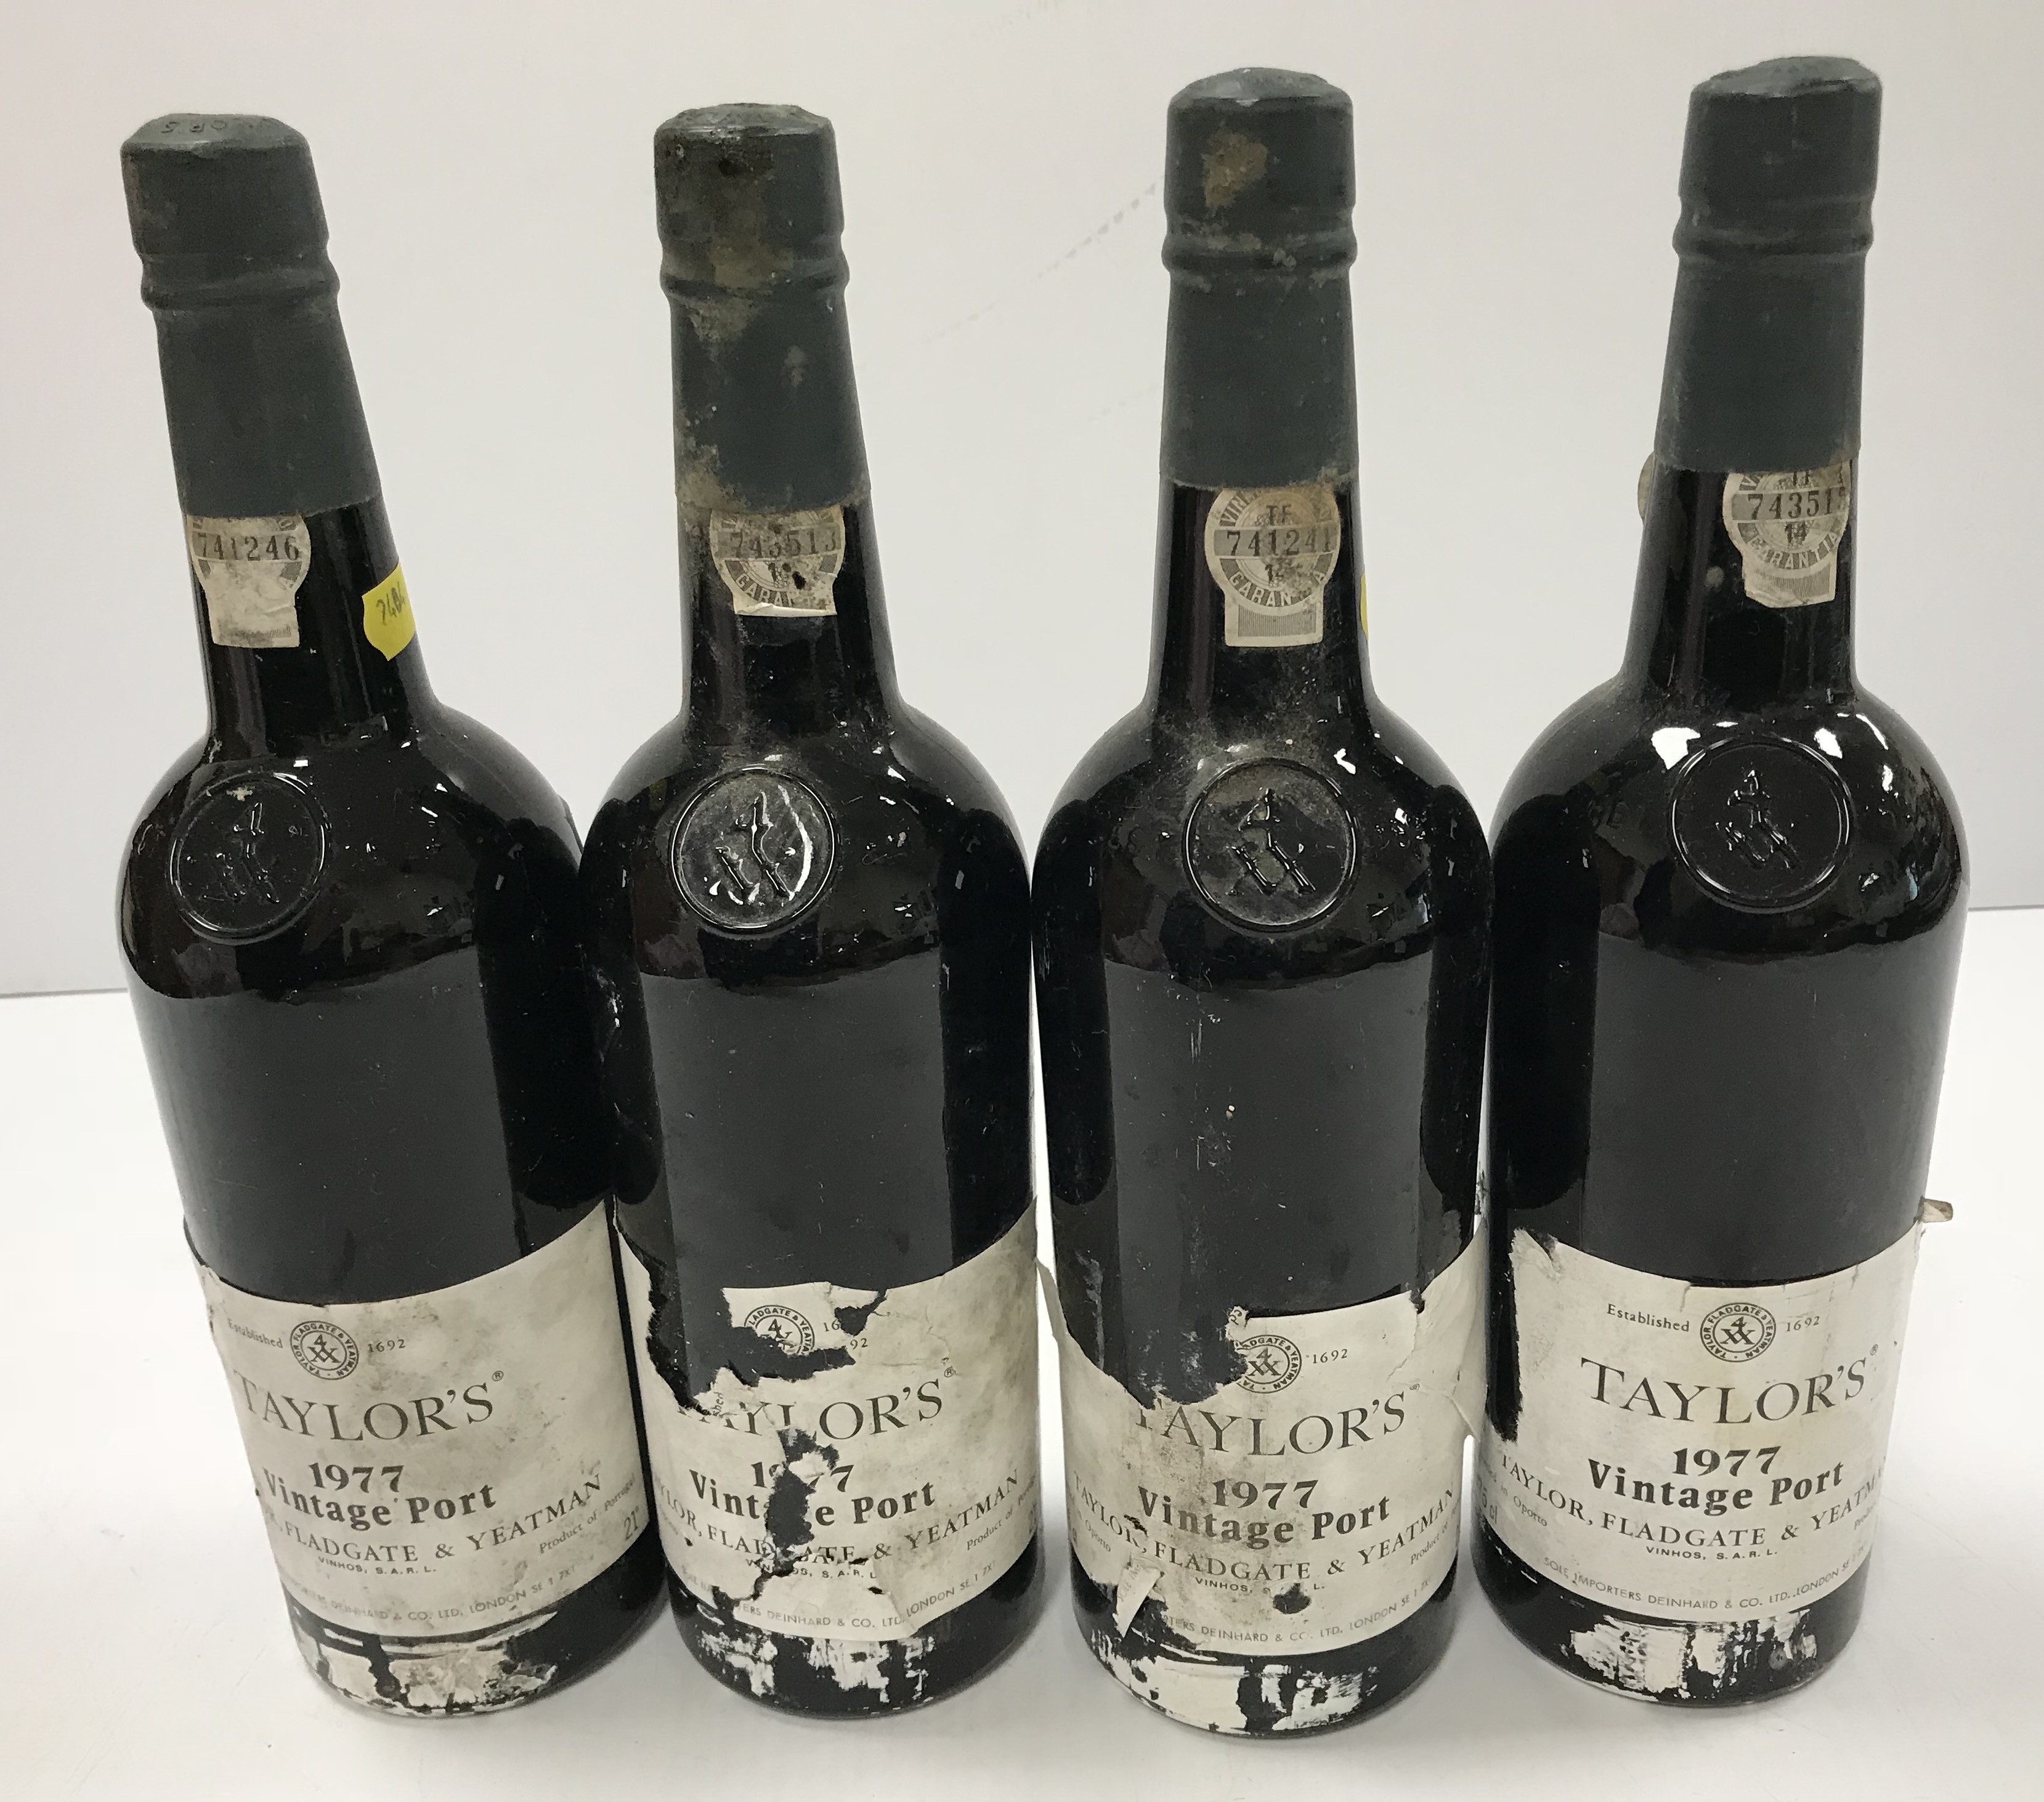 Four bottles Taylor's vintage port 1977 (4)